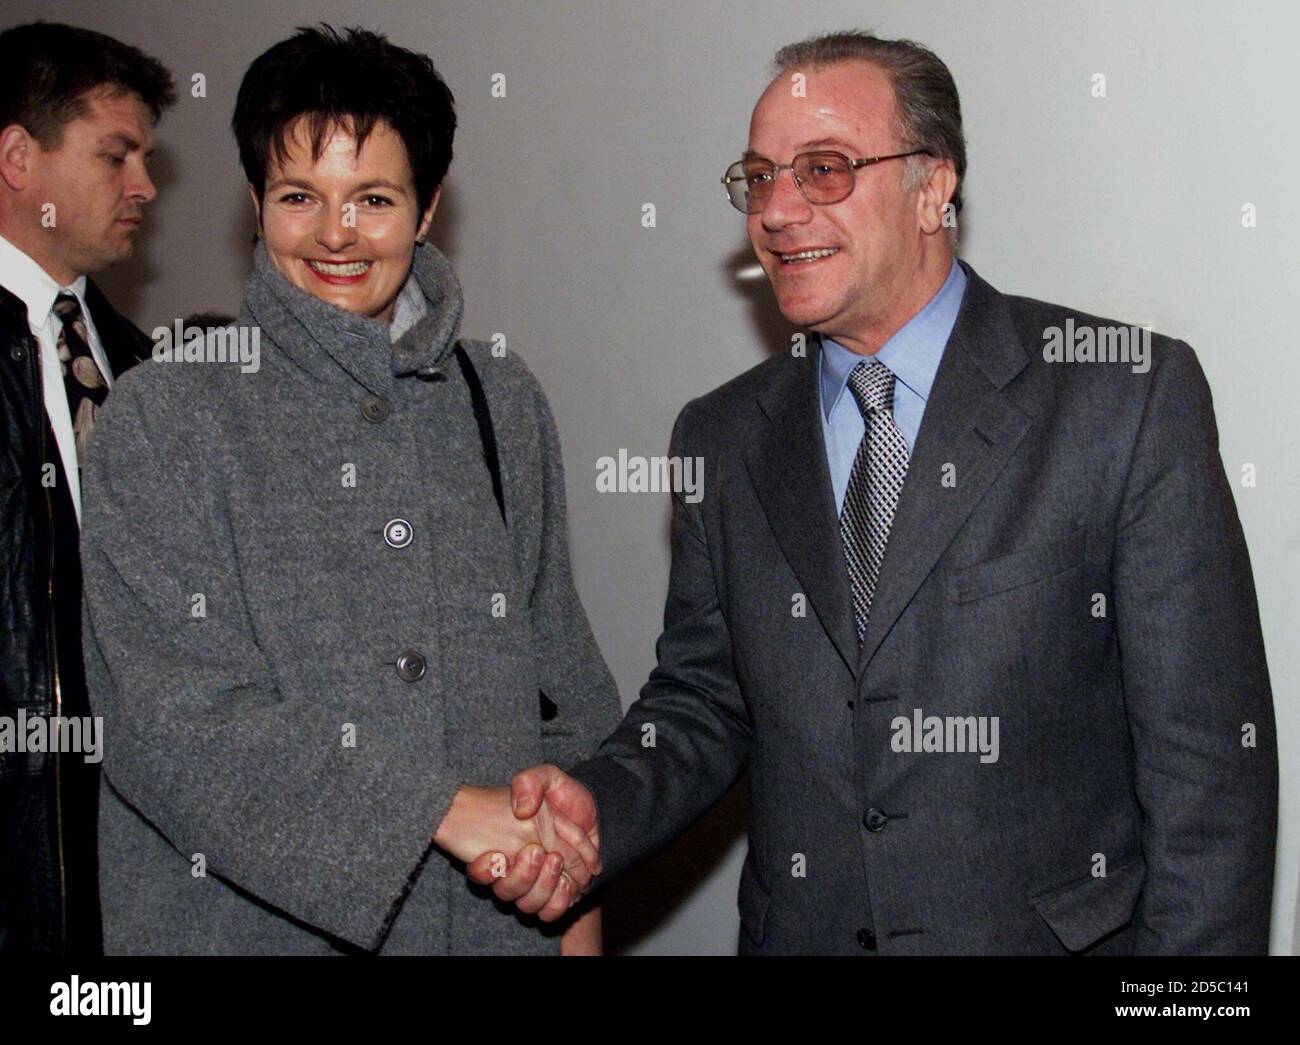 Der albanische Innenminister Spartak Poci (R) schüttelt die Hände mit der  Schweizer Justizministerin Ruth Metzler in Tirana im Januar 23. Metzler ist  auf einem zweitägigen offiziellen Besuch in Albanien. BOGEN Stockfotografie  - Alamy